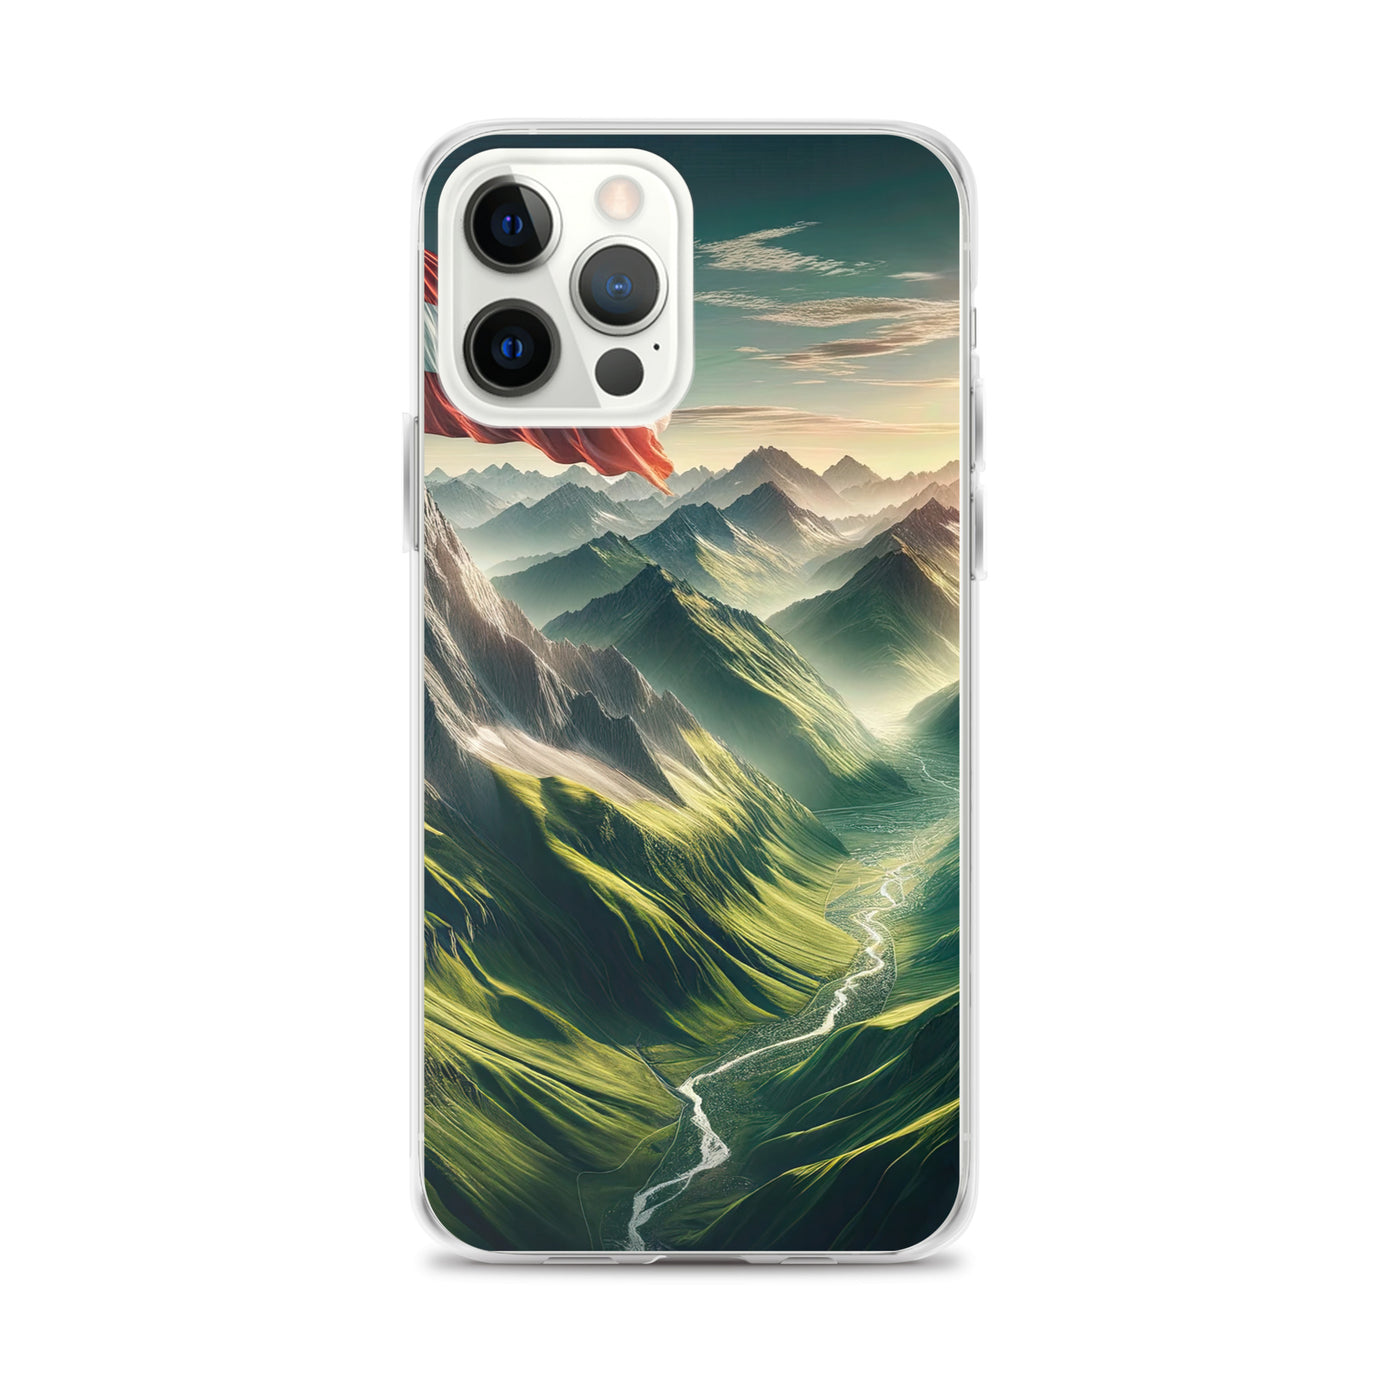 Alpen Gebirge: Fotorealistische Bergfläche mit Österreichischer Flagge - iPhone Schutzhülle (durchsichtig) berge xxx yyy zzz iPhone 12 Pro Max